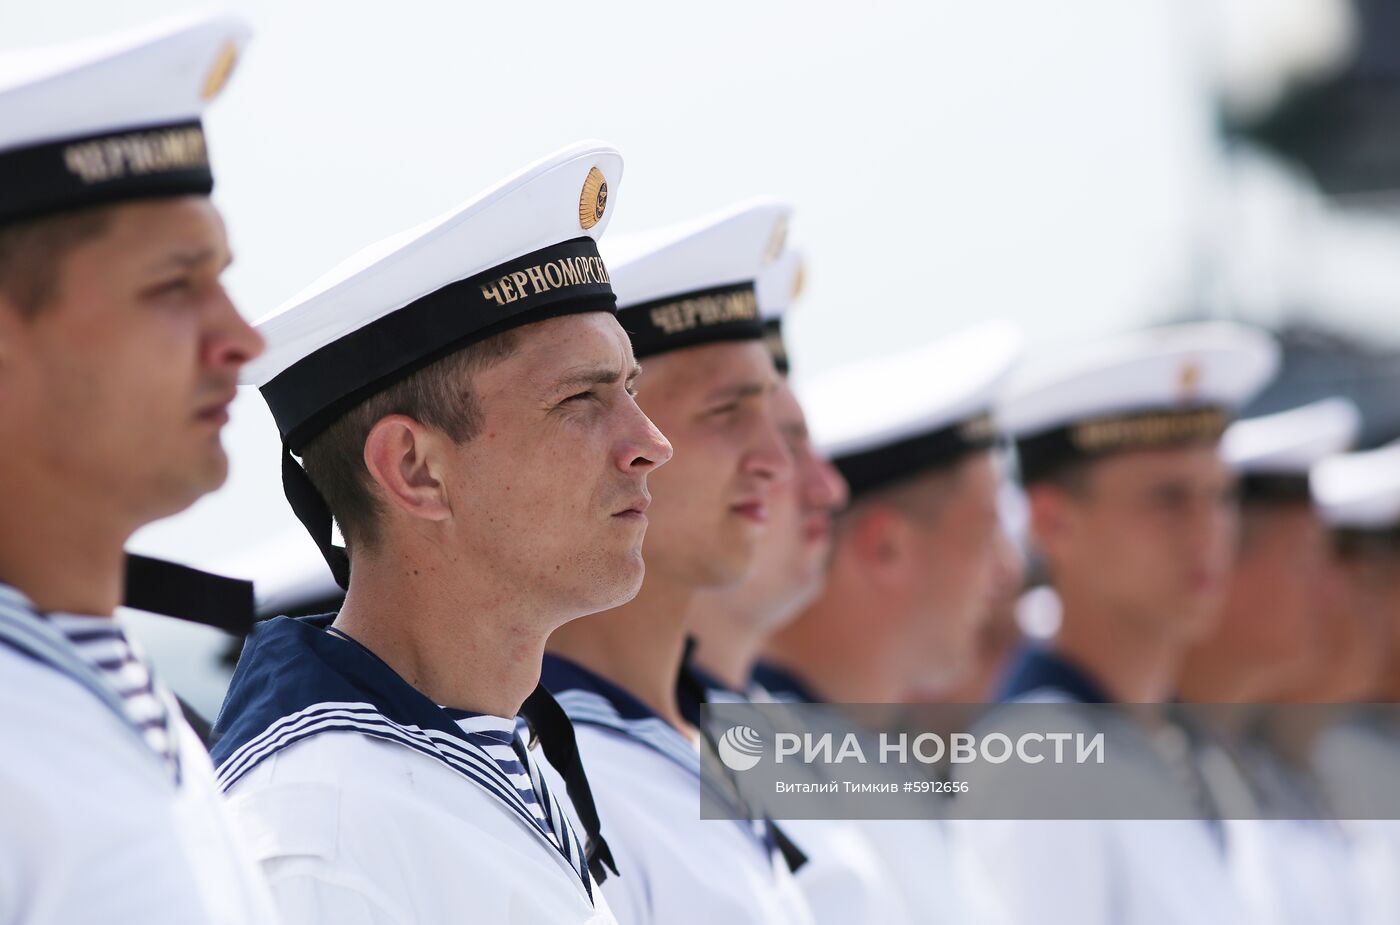 Церемония поднятия флага на корабле "Дмитрий Рогачев"